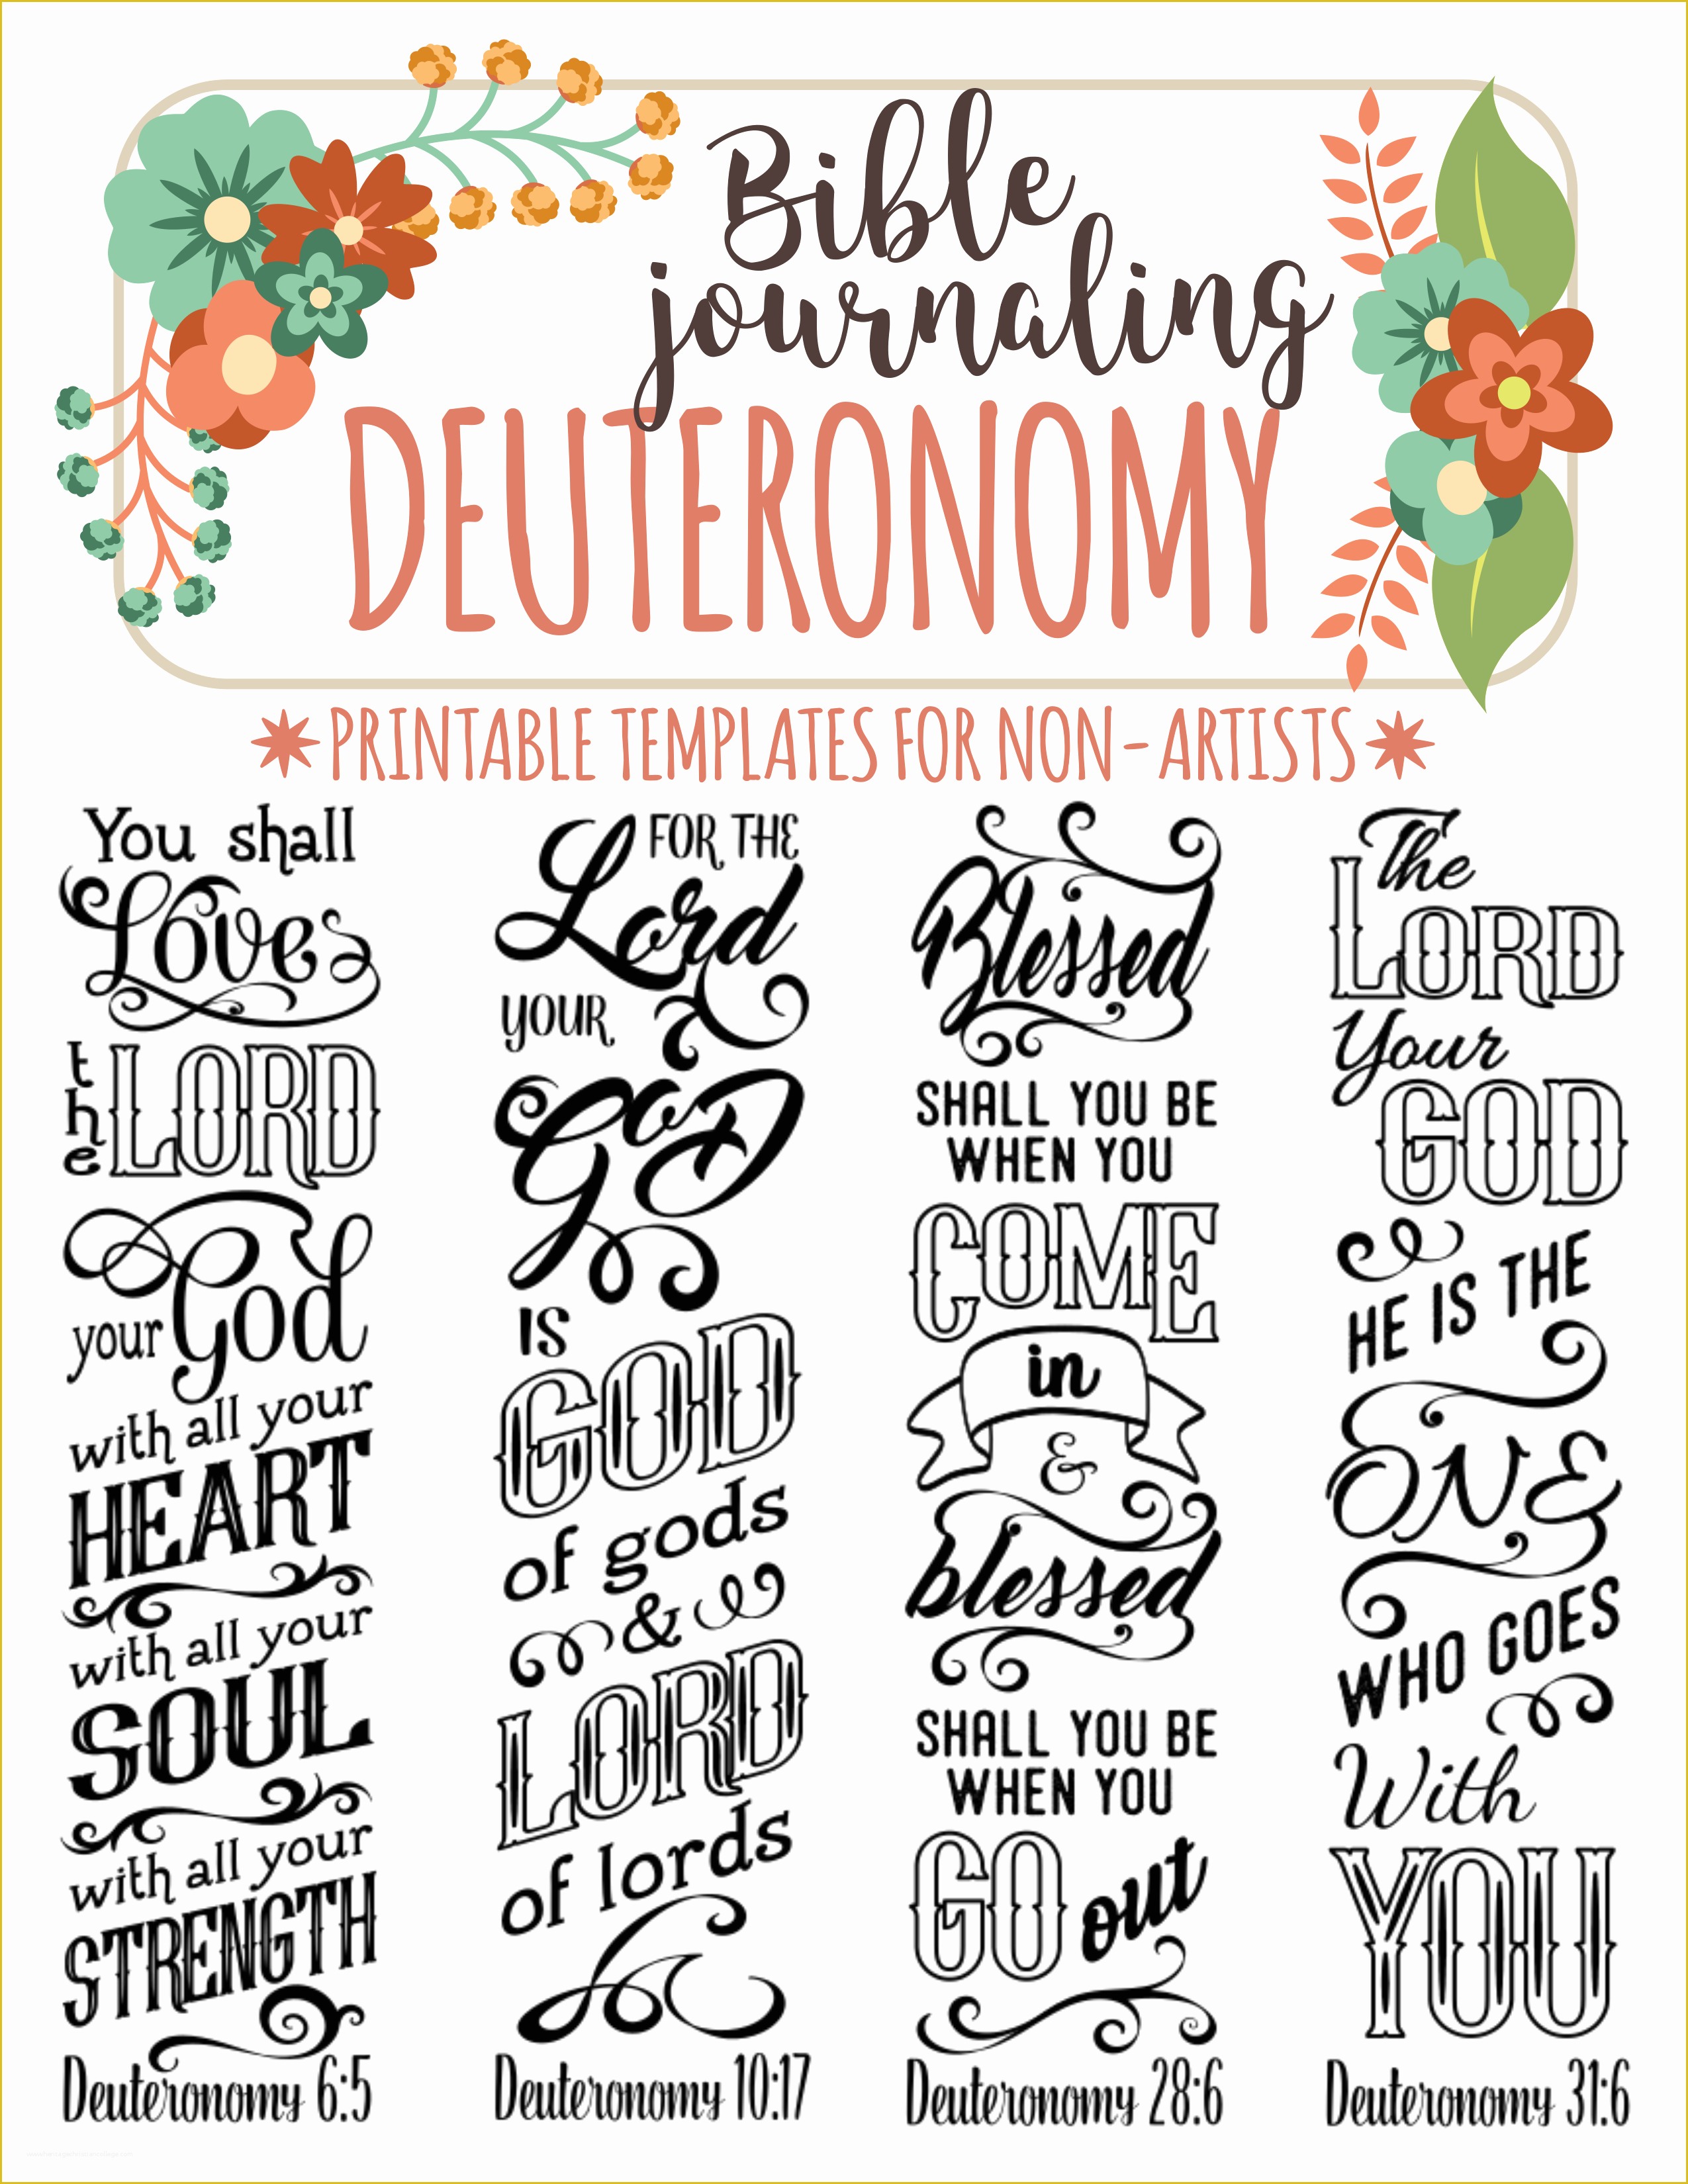 Free Bible Journaling Templates Of Deuteronomy 4 Bible Journaling Printable Templates